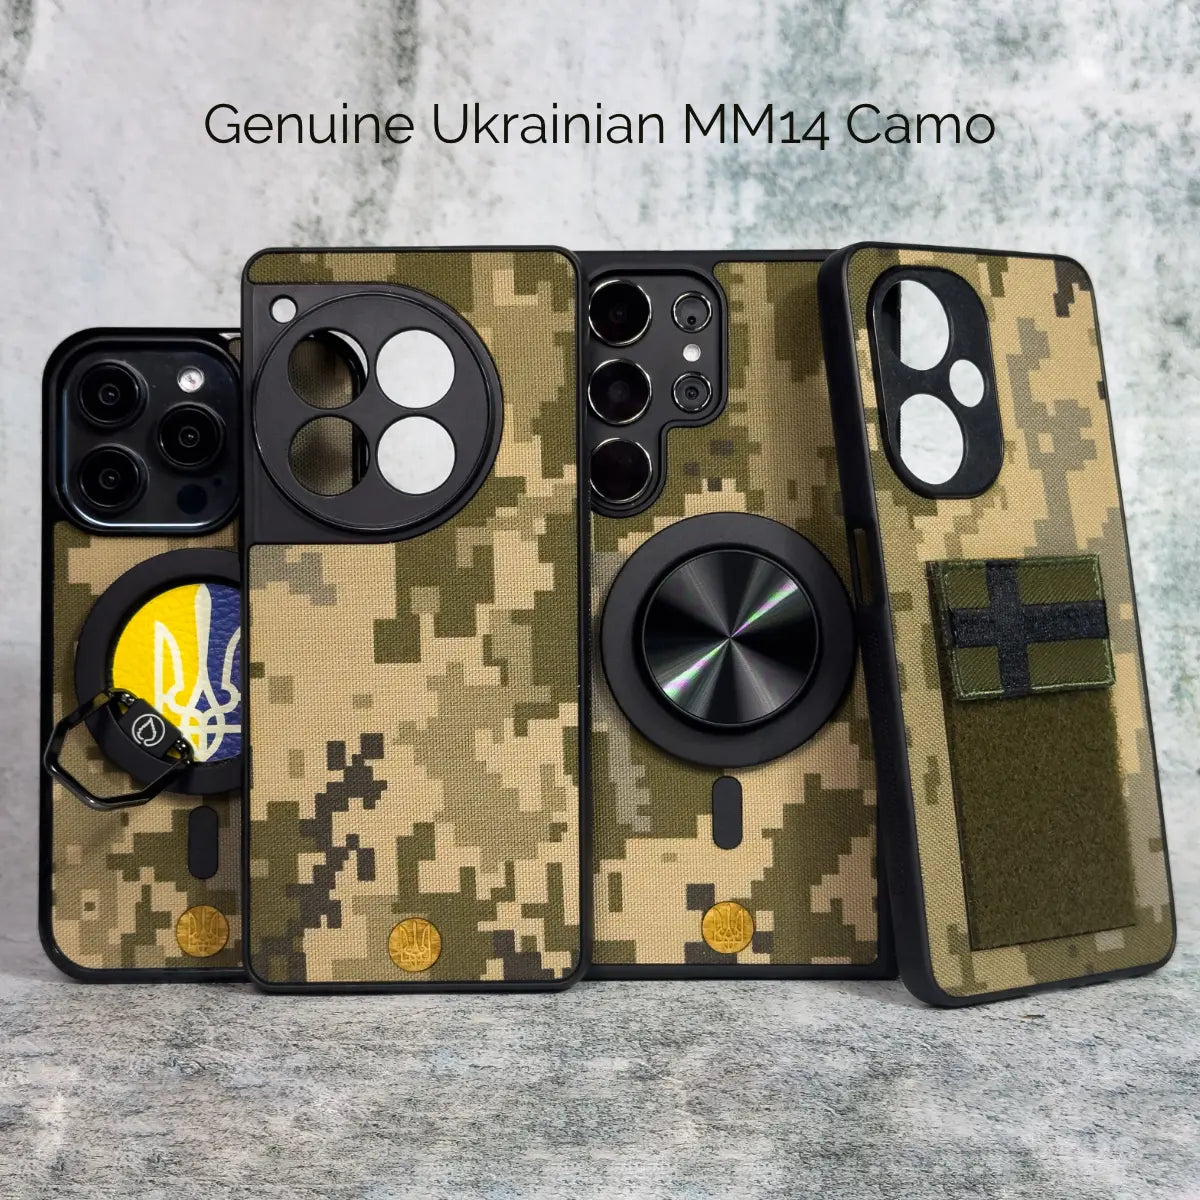 Suomalainen M05 armeijan kamouflage MagSafe-kotelo: Kestävä suoja ulkoilmaelämään, valmistettu kestävästä materiaalista, suojaa puhelimesi iskuilta ja naarmuilta. Vaihdettavat moduulit, kuten korttiteline ja langaton laturi. Ympäristöystävällinen valinta.